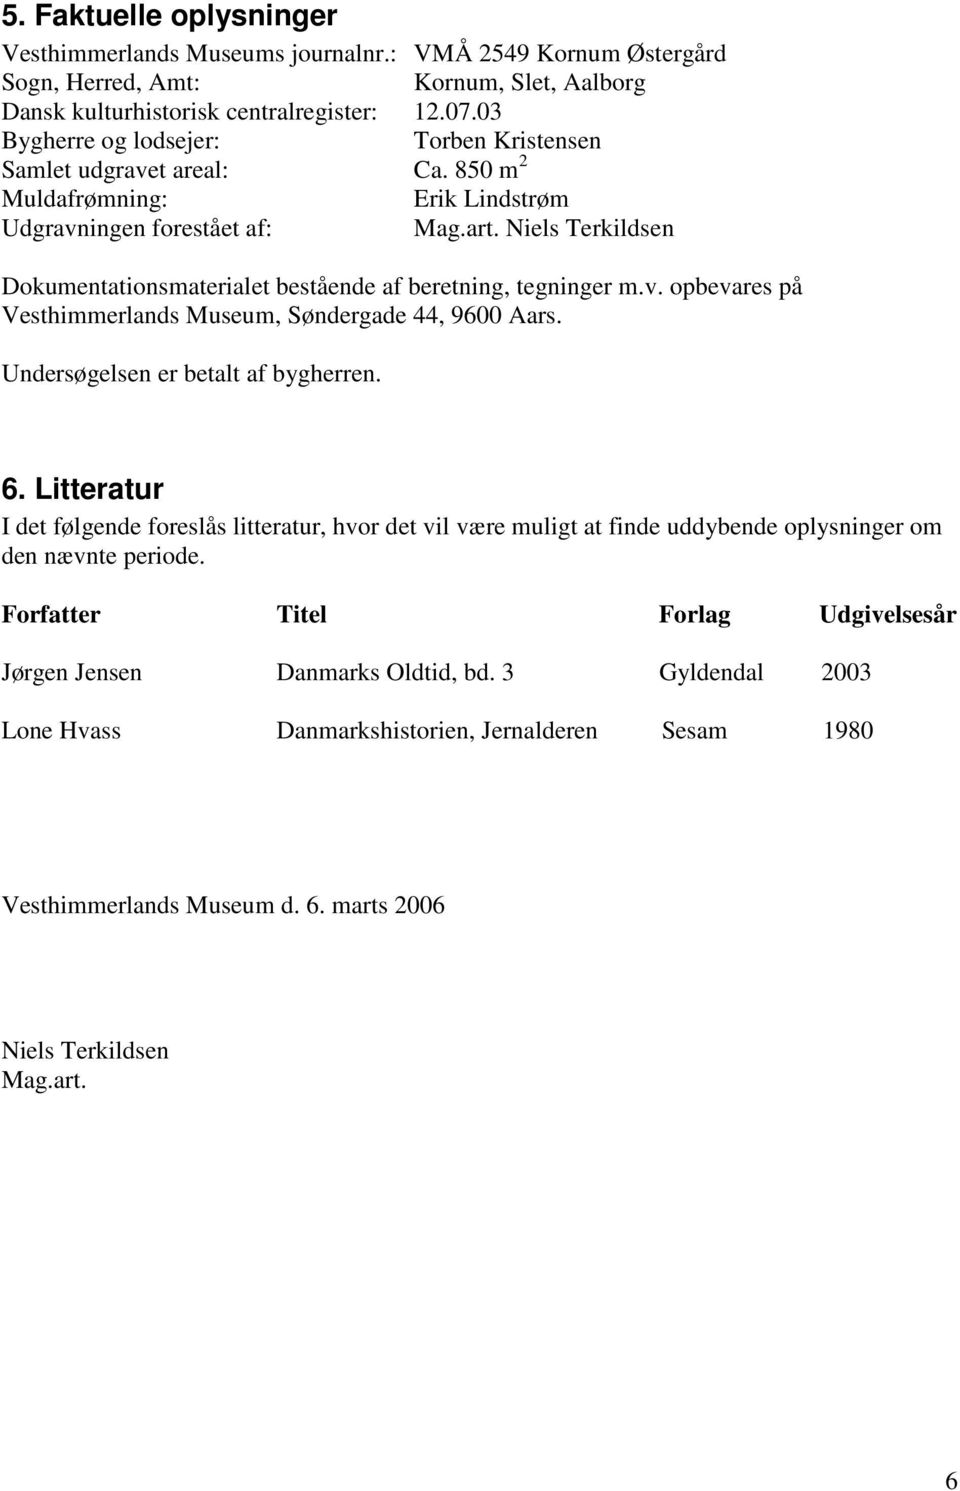 Niels Terkildsen Dokumentationsmaterialet bestående af beretning, tegninger m.v. opbevares på Vesthimmerlands Museum, Søndergade 44, 9600 Aars. Undersøgelsen er betalt af bygherren. 6.